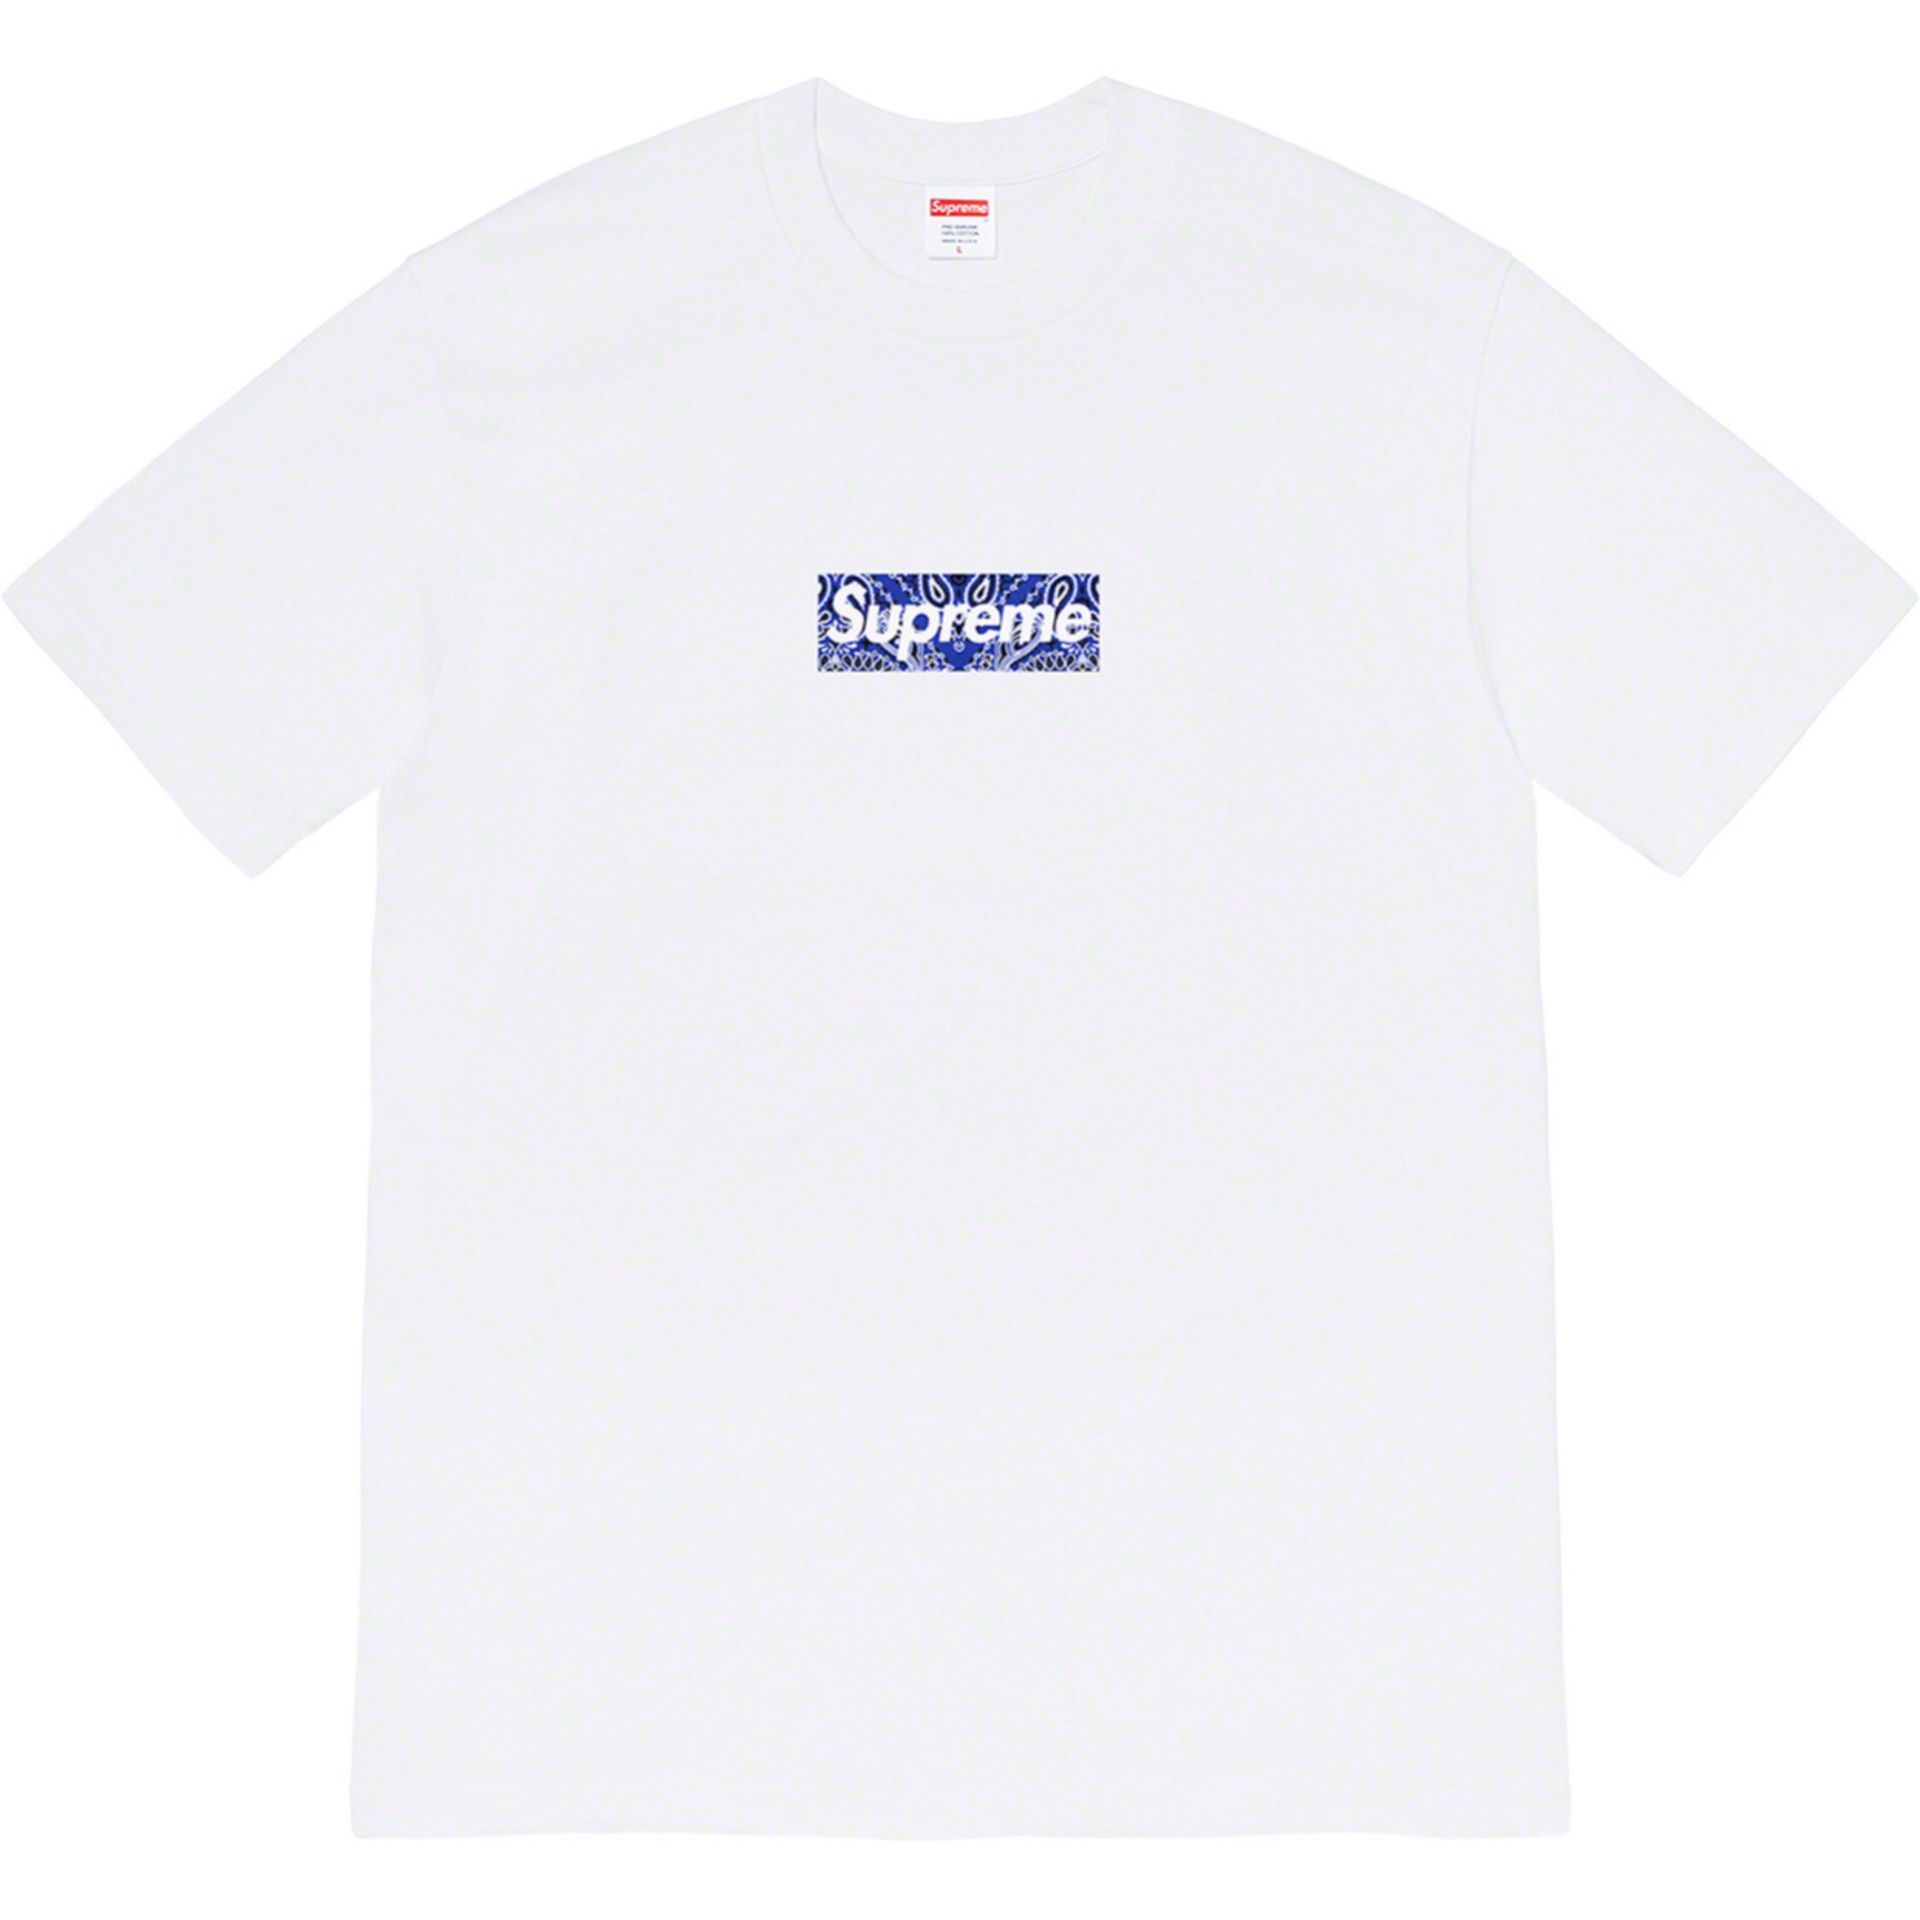 Brand new White Supreme Bandana Box Logo T-shirt FW19 #supreme #boxlogo